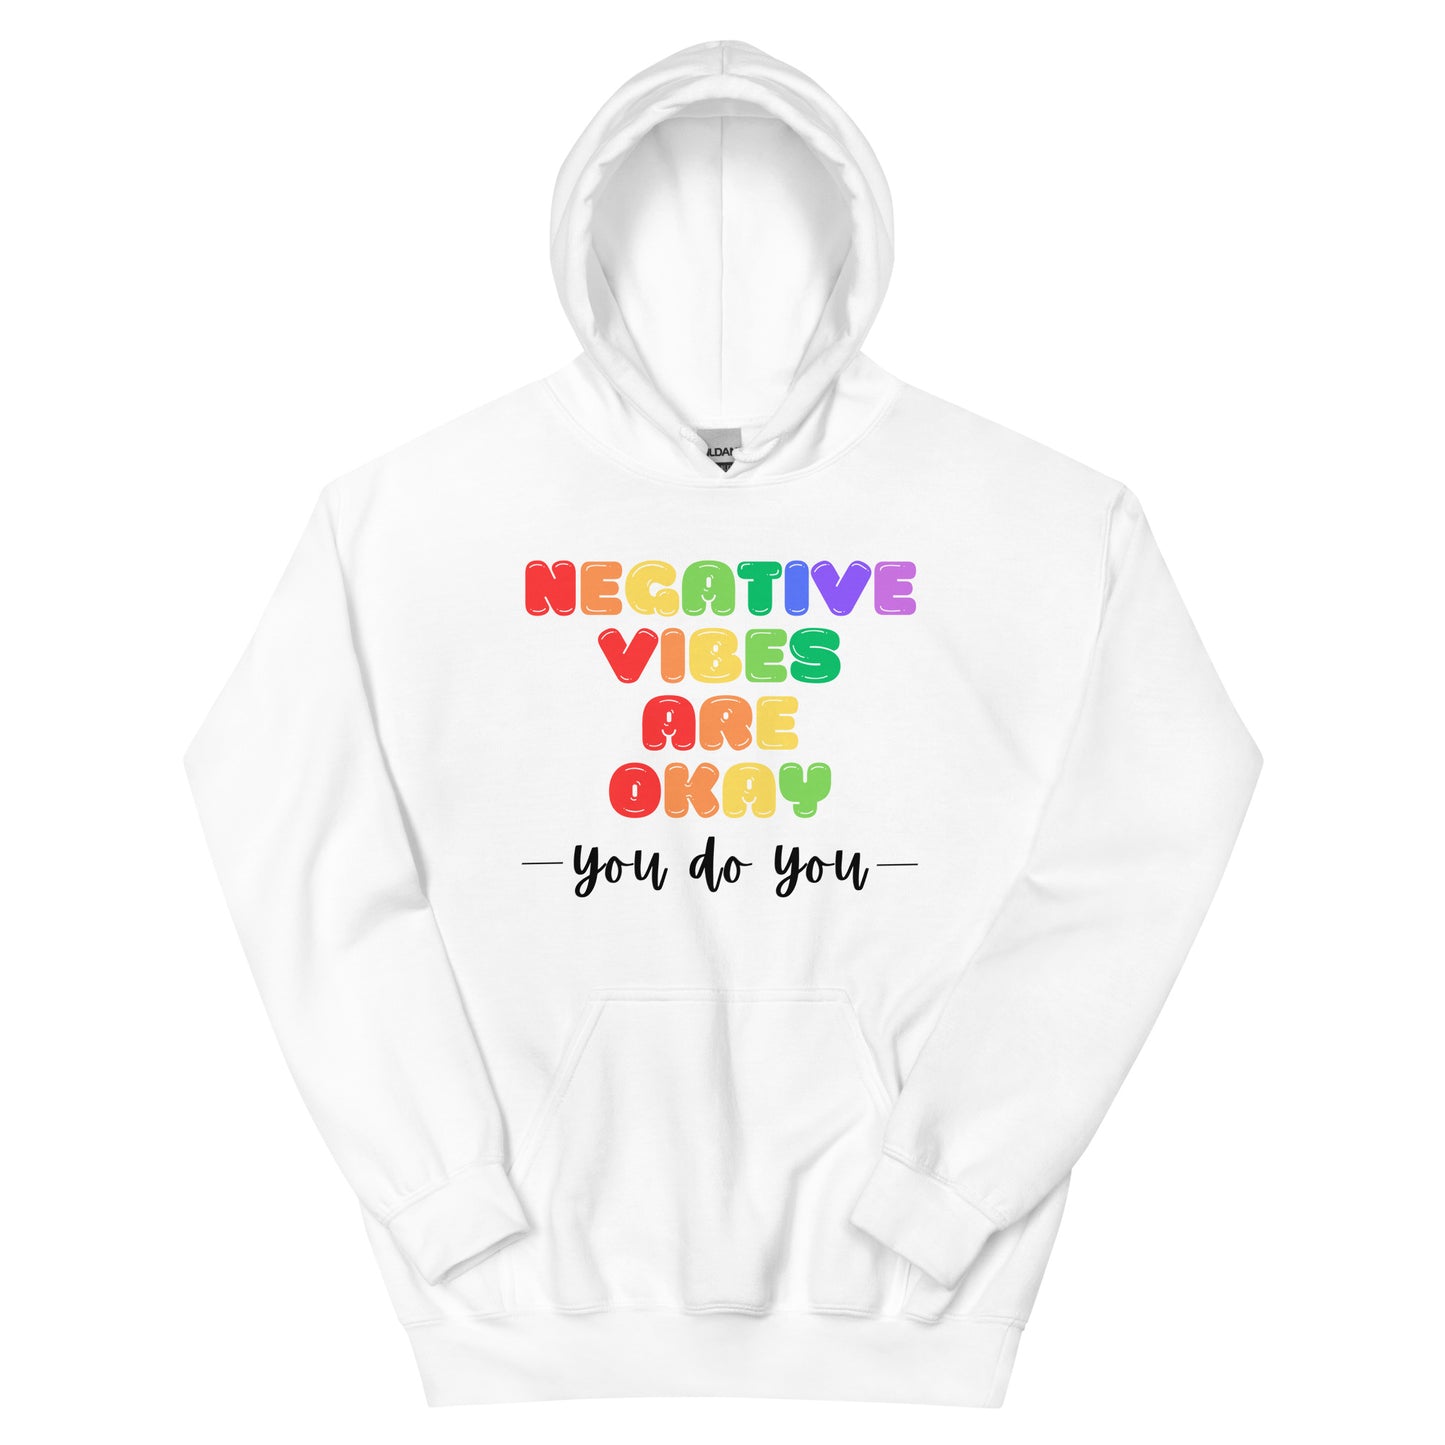 Negative Vibes are Okay - Light Unisex Hoodie